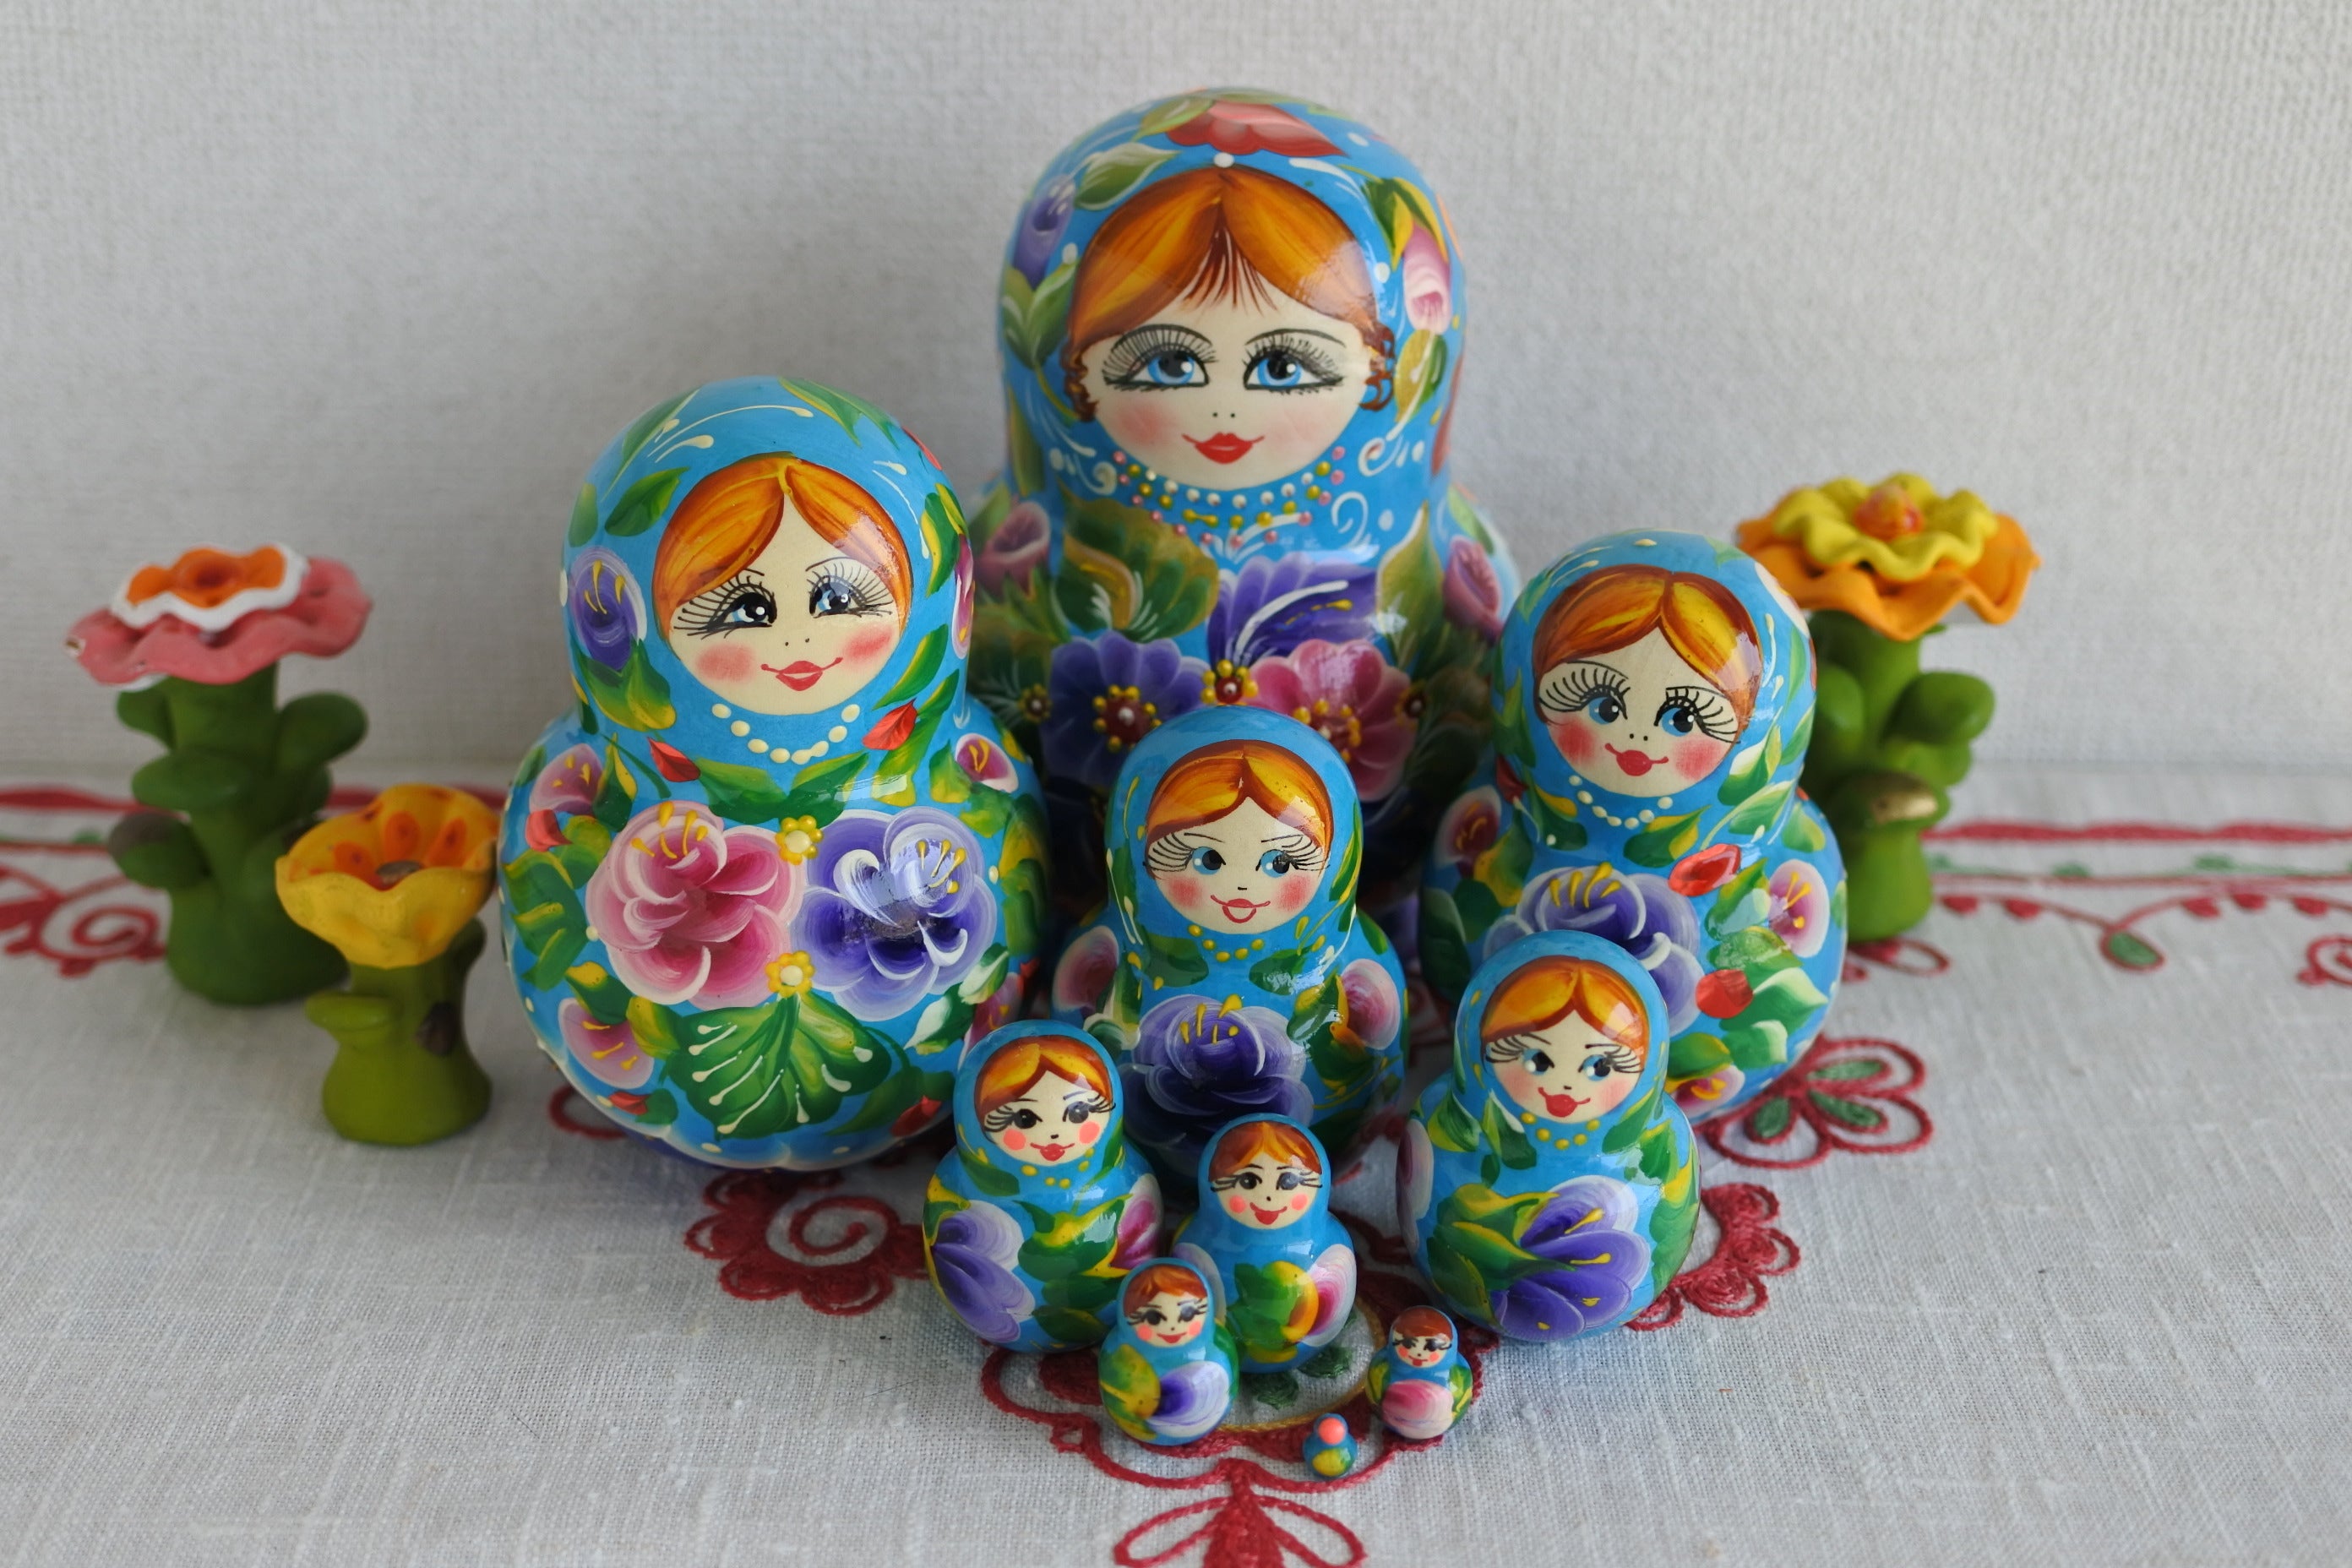 マトリョーシカ ロシア民芸品 10ピース ブルー 花 丸い形 ロシア雑貨い